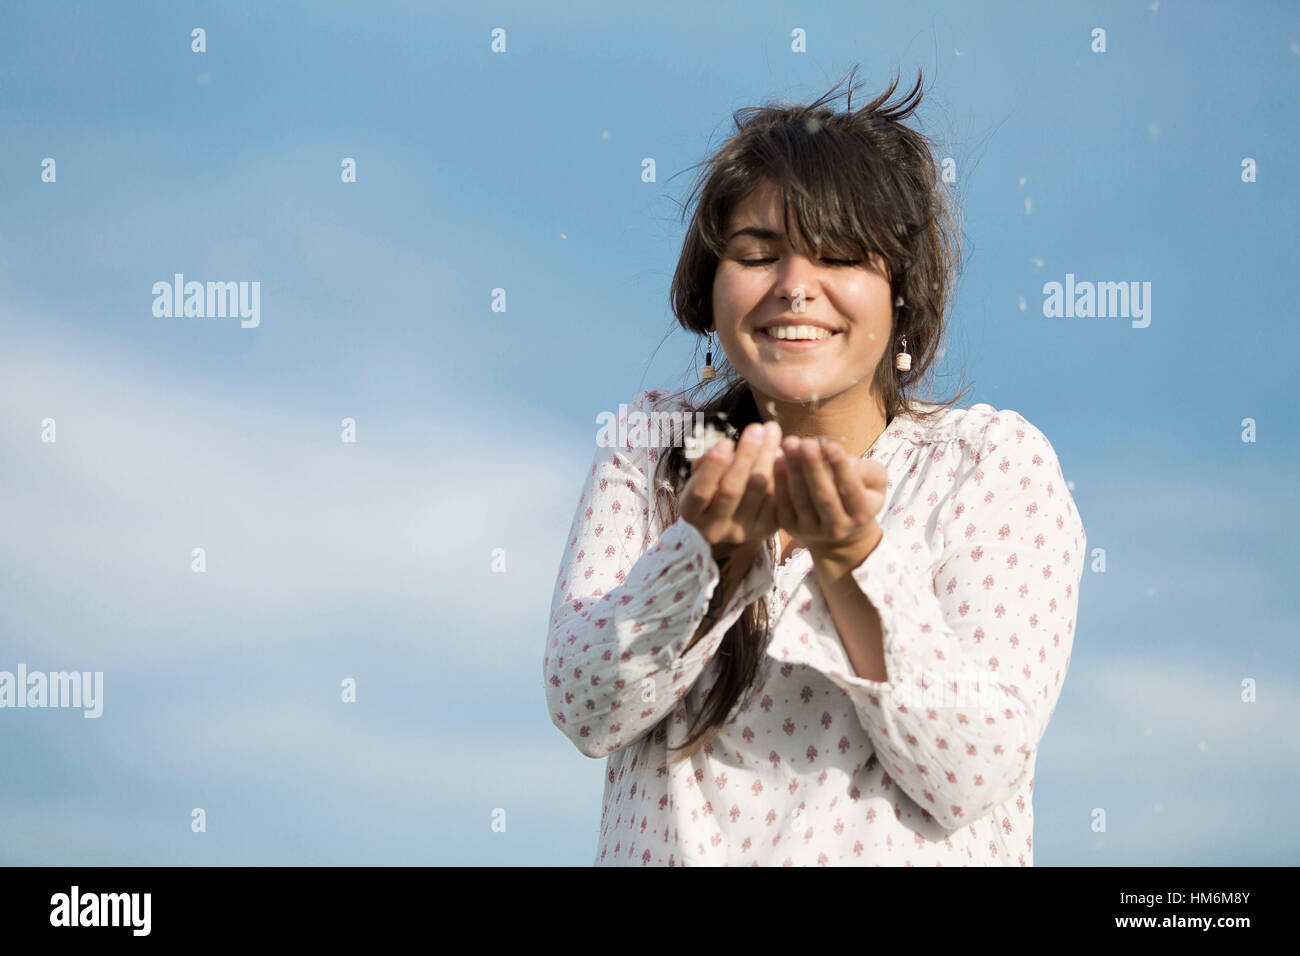 Junge Frau der Pusteblume hält Samen in den Händen, die vom viento verweht werden Foto de stock